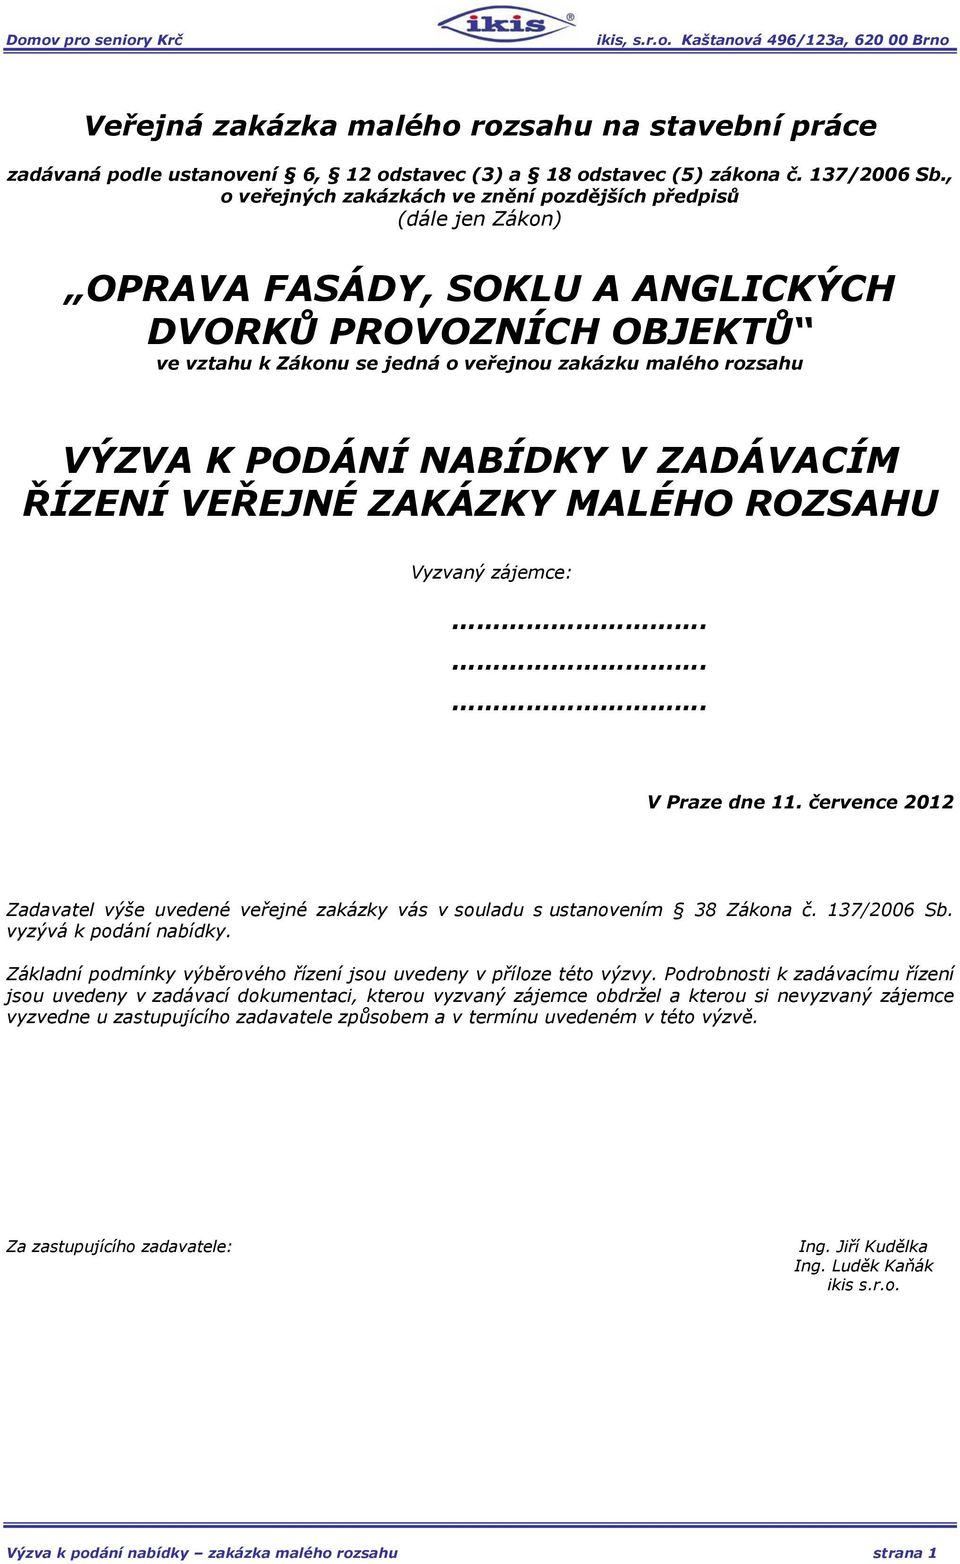 PODÁNÍ NABÍDKY V ZADÁVACÍM ŘÍZENÍ VEŘEJNÉ ZAKÁZKY MALÉHO ROZSAHU Vyzvaný zájemce:... V Praze dne 11. července 2012 Zadavatel výše uvedené veřejné zakázky vás v souladu s ustanovením 38 Zákona č.